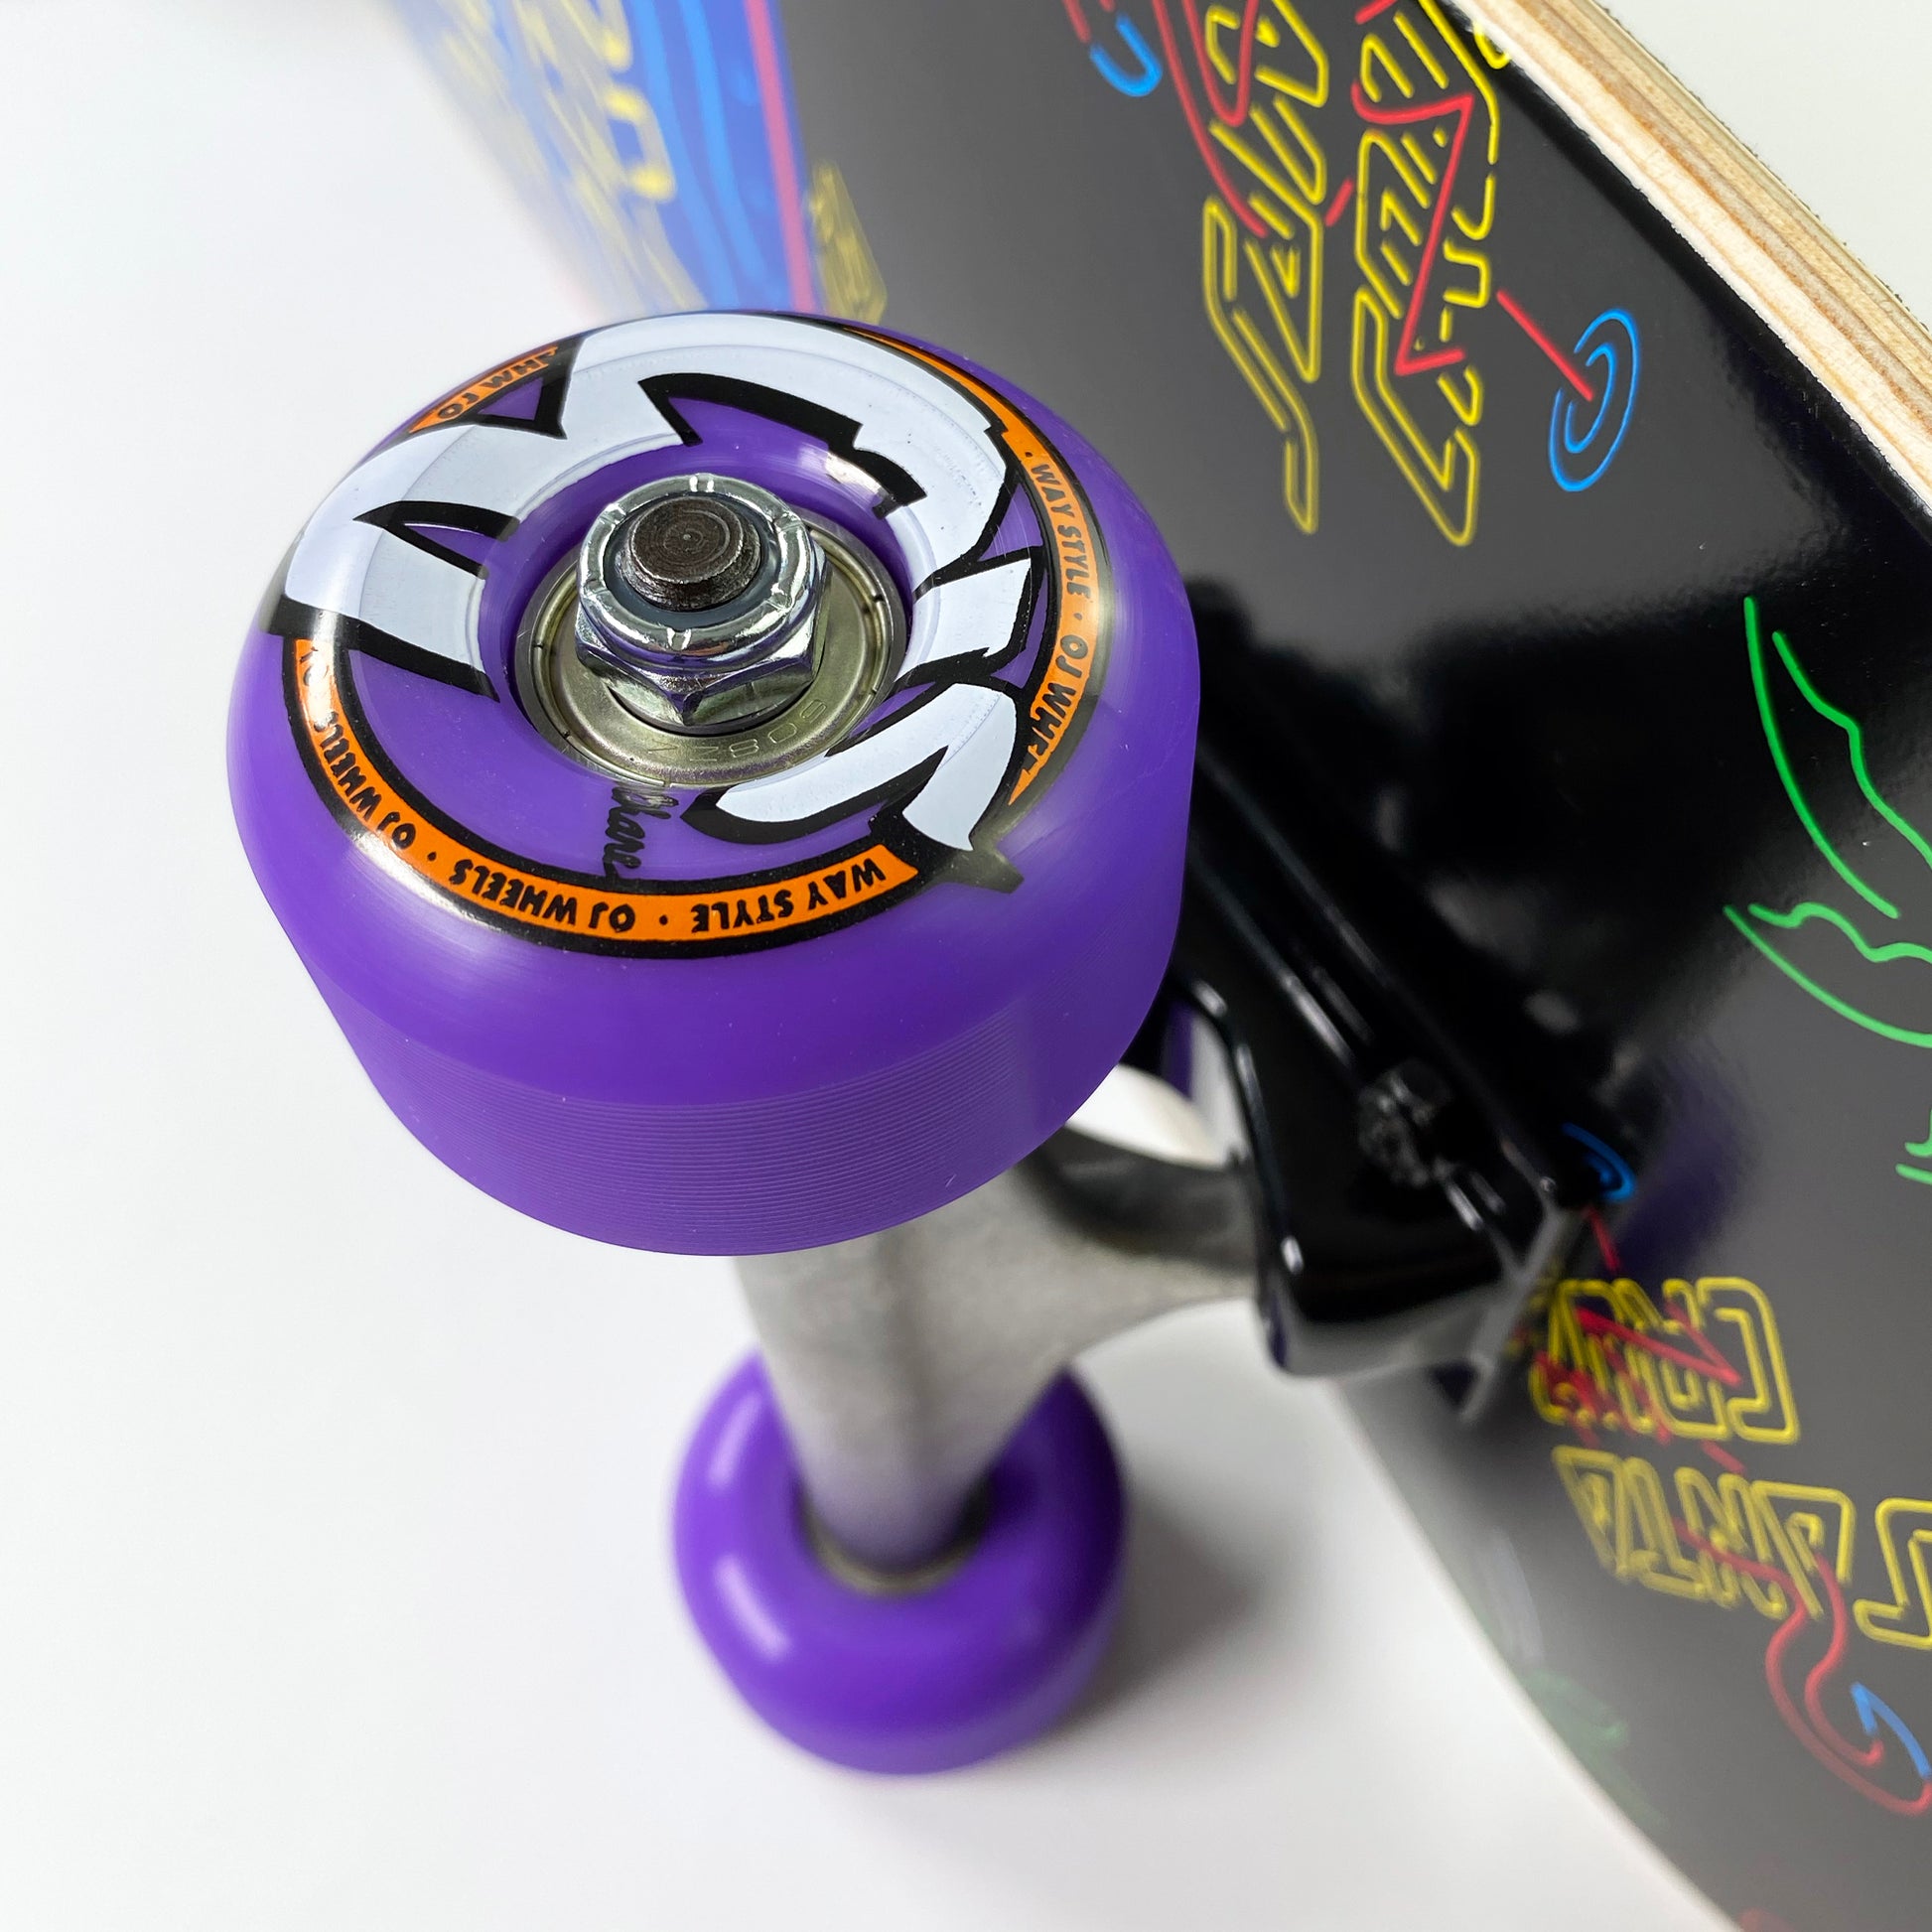 Santa Cruz Glow Dot Complete Skateboard 7.8" - Multi - Prime Delux Store